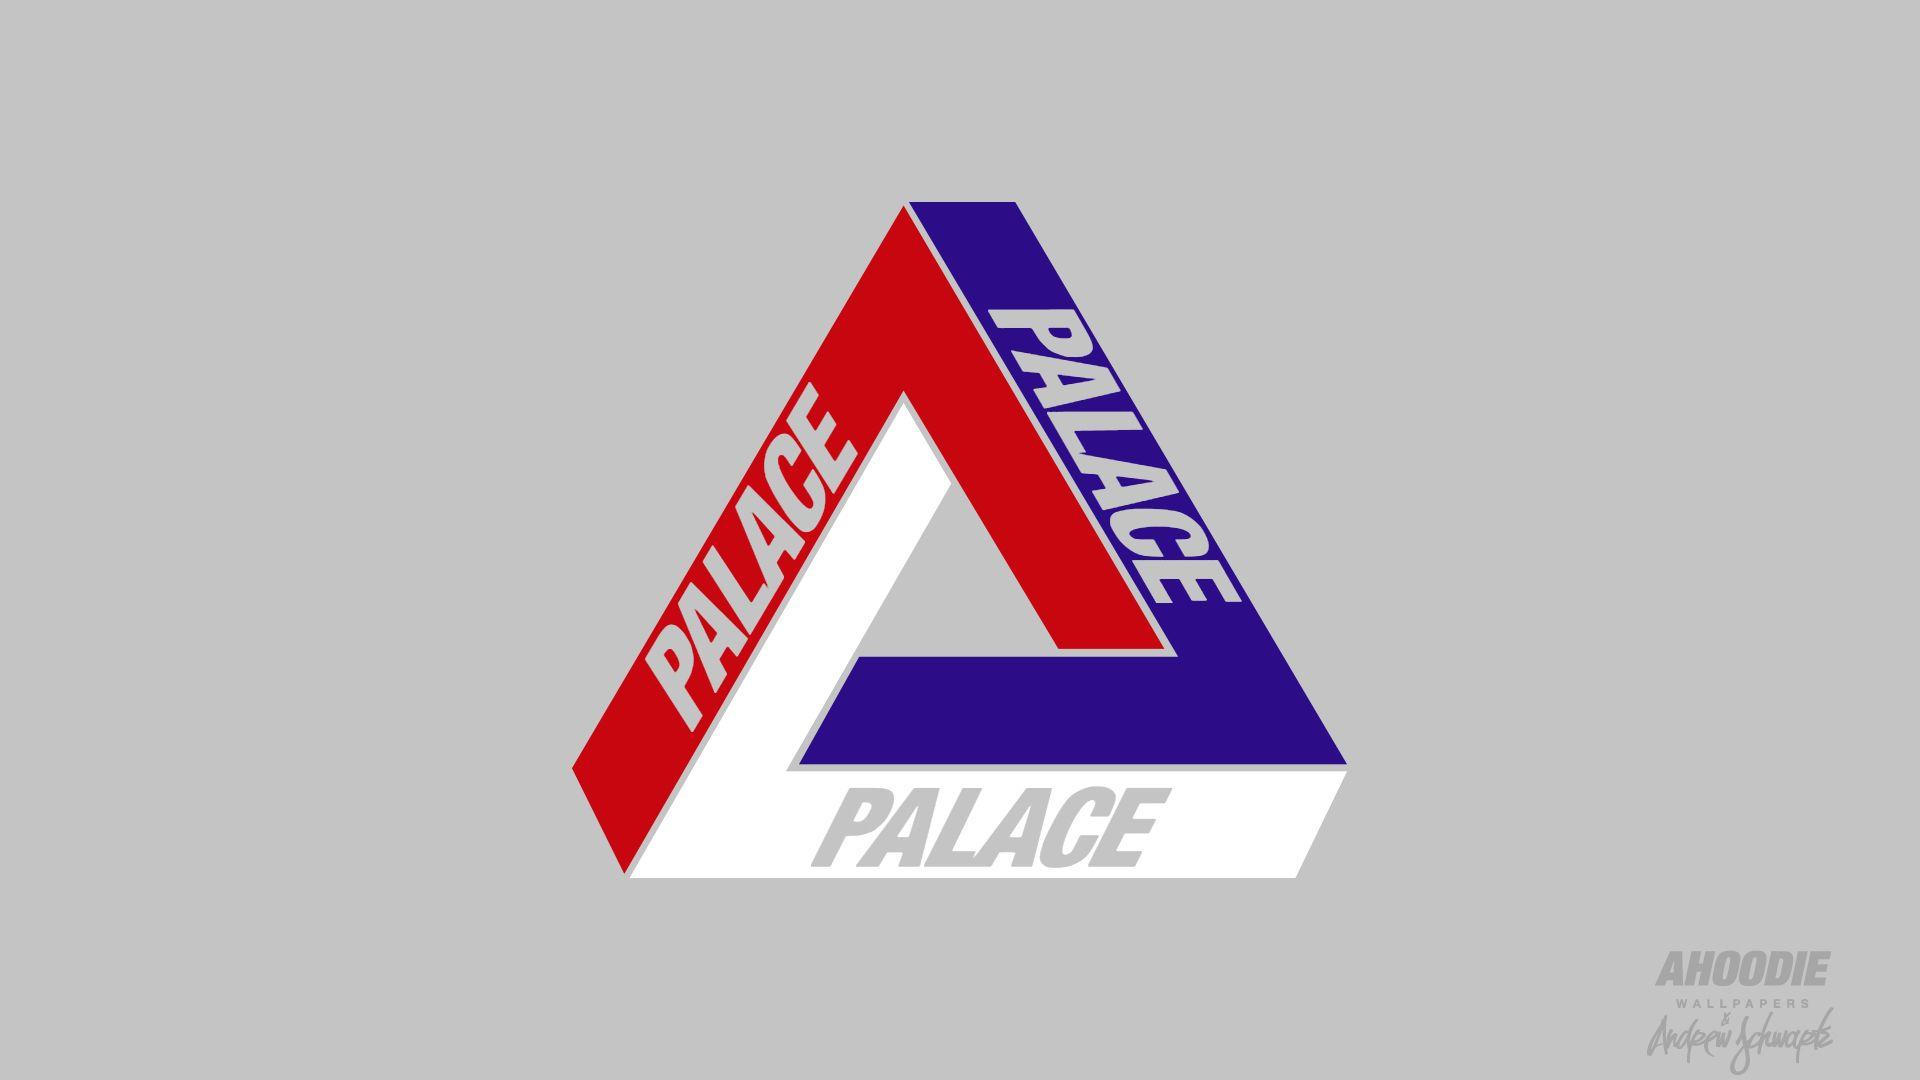 Palace Skateboards Logo - Palace skateboards Logos